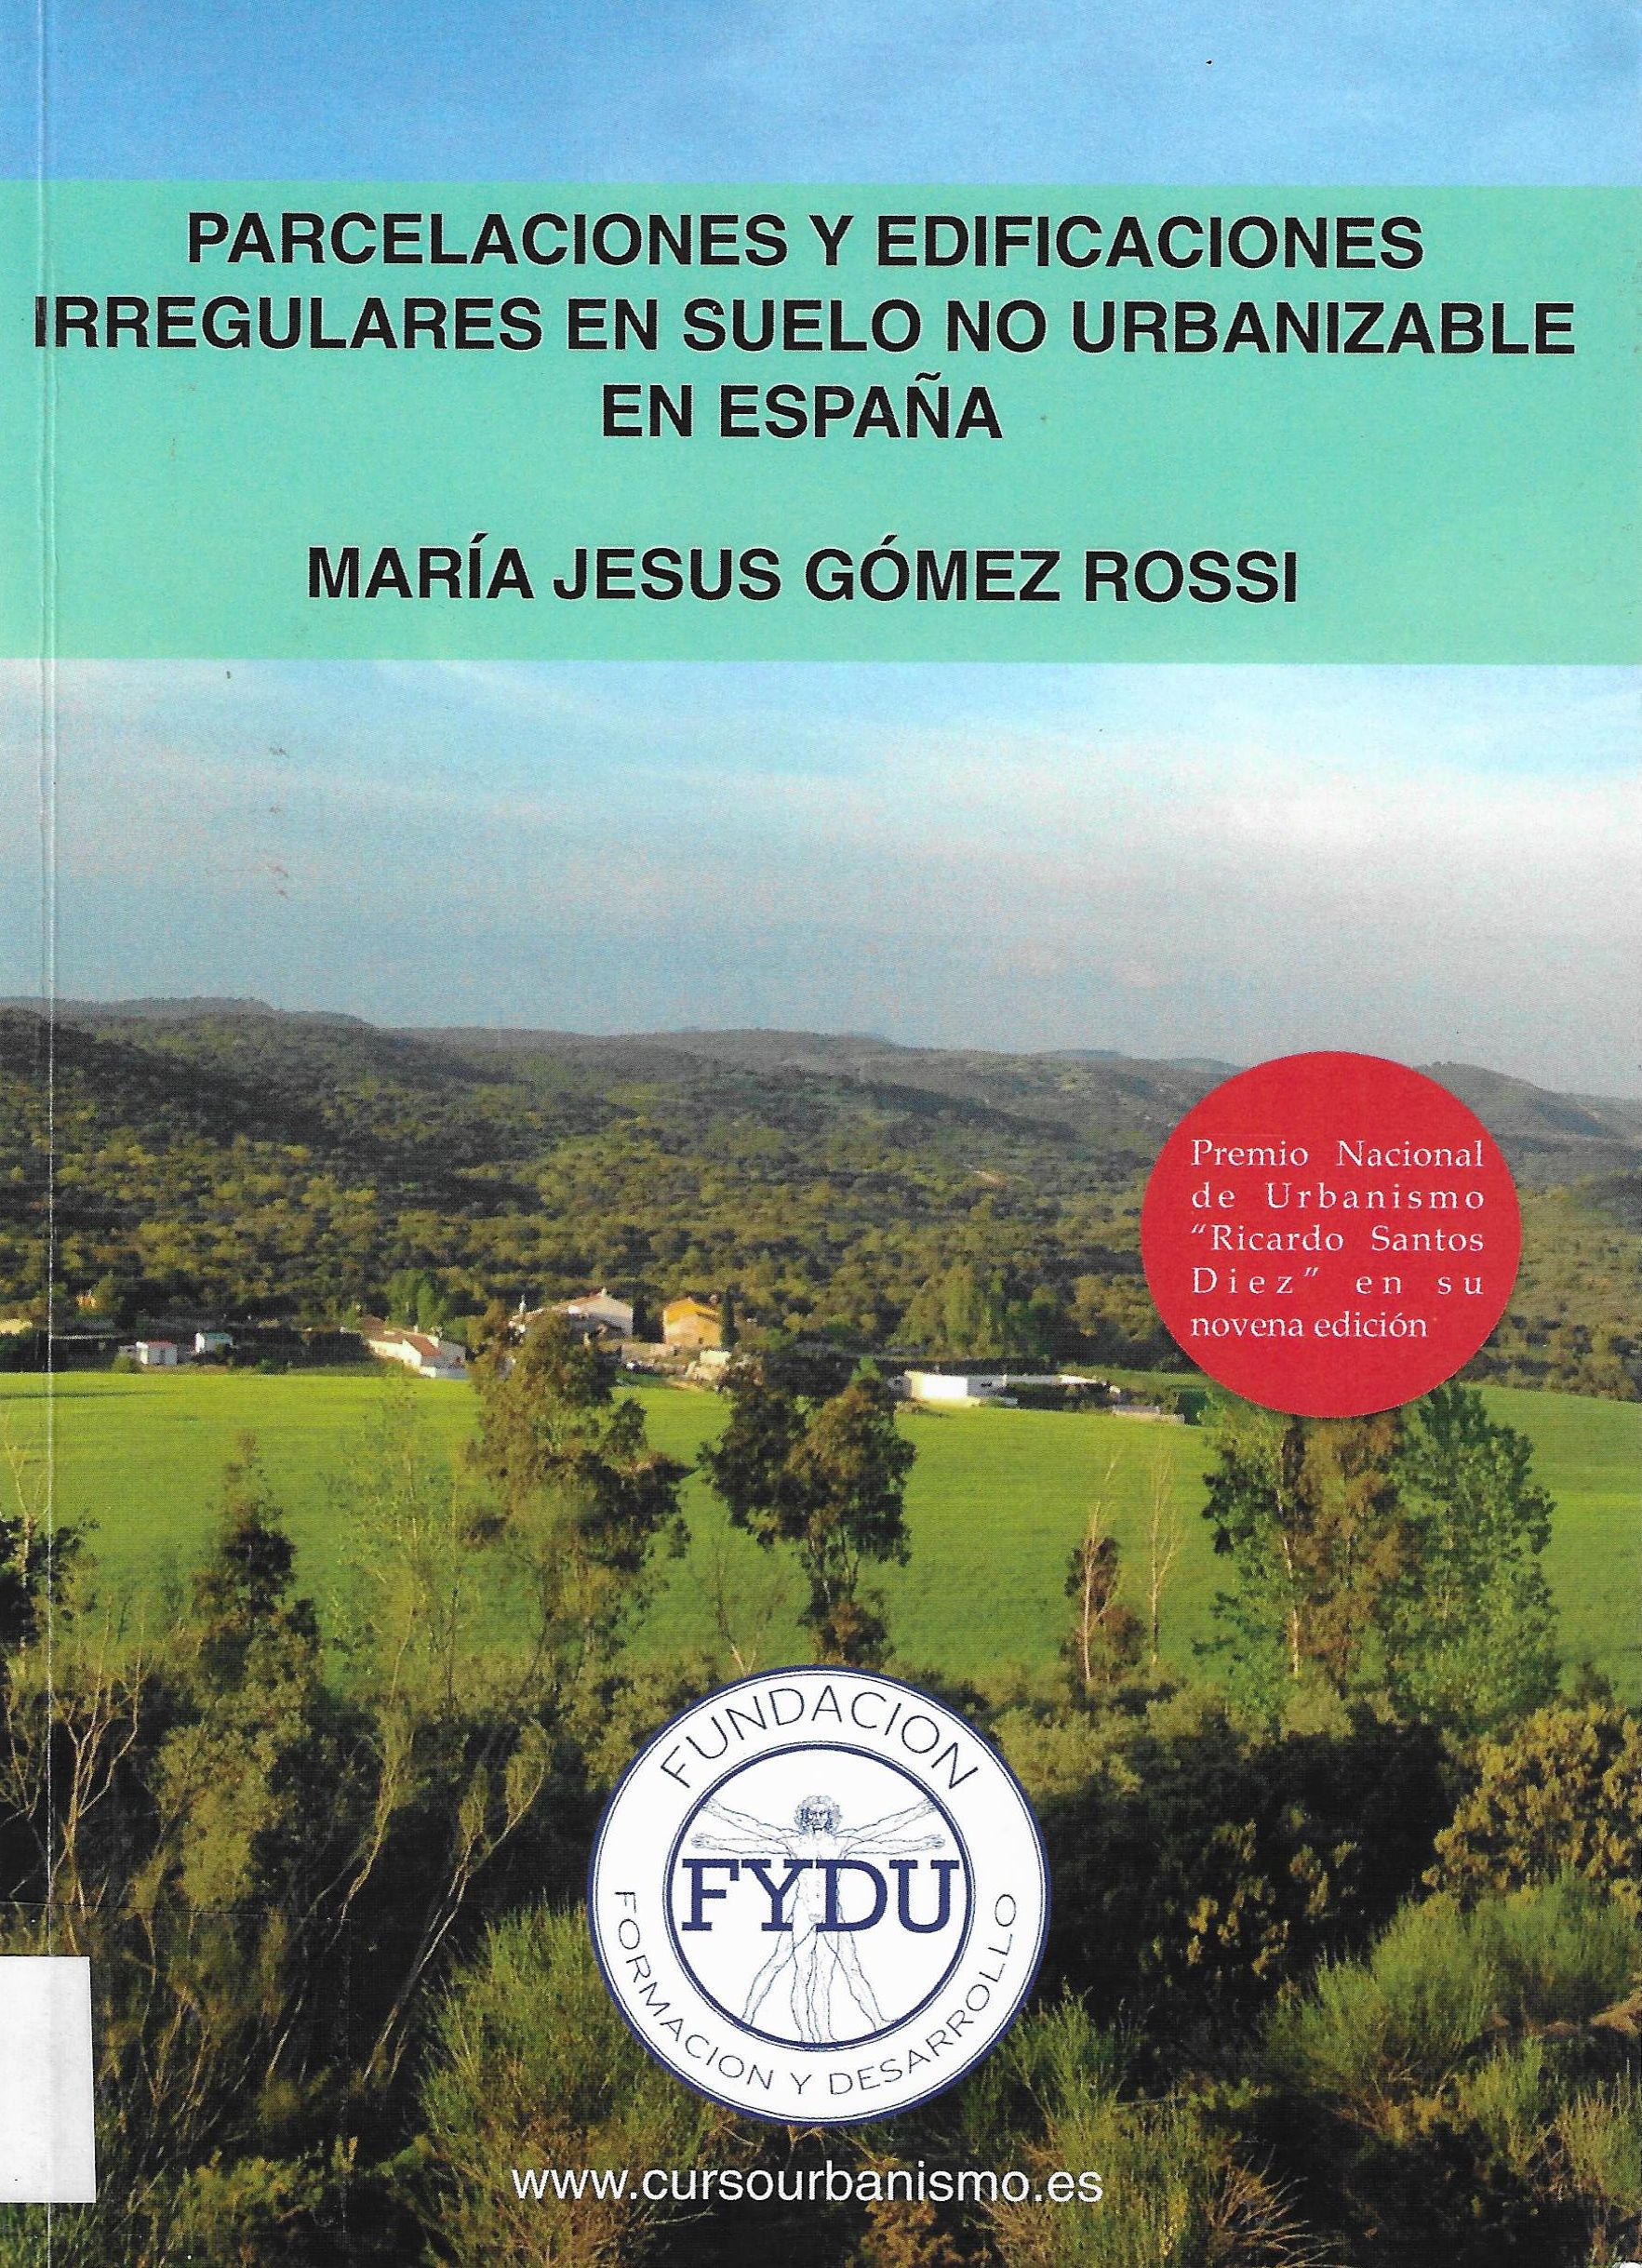 Imagen de portada del libro Parcelaciones y edificaciones irregulares en suelo no urbanizable en España